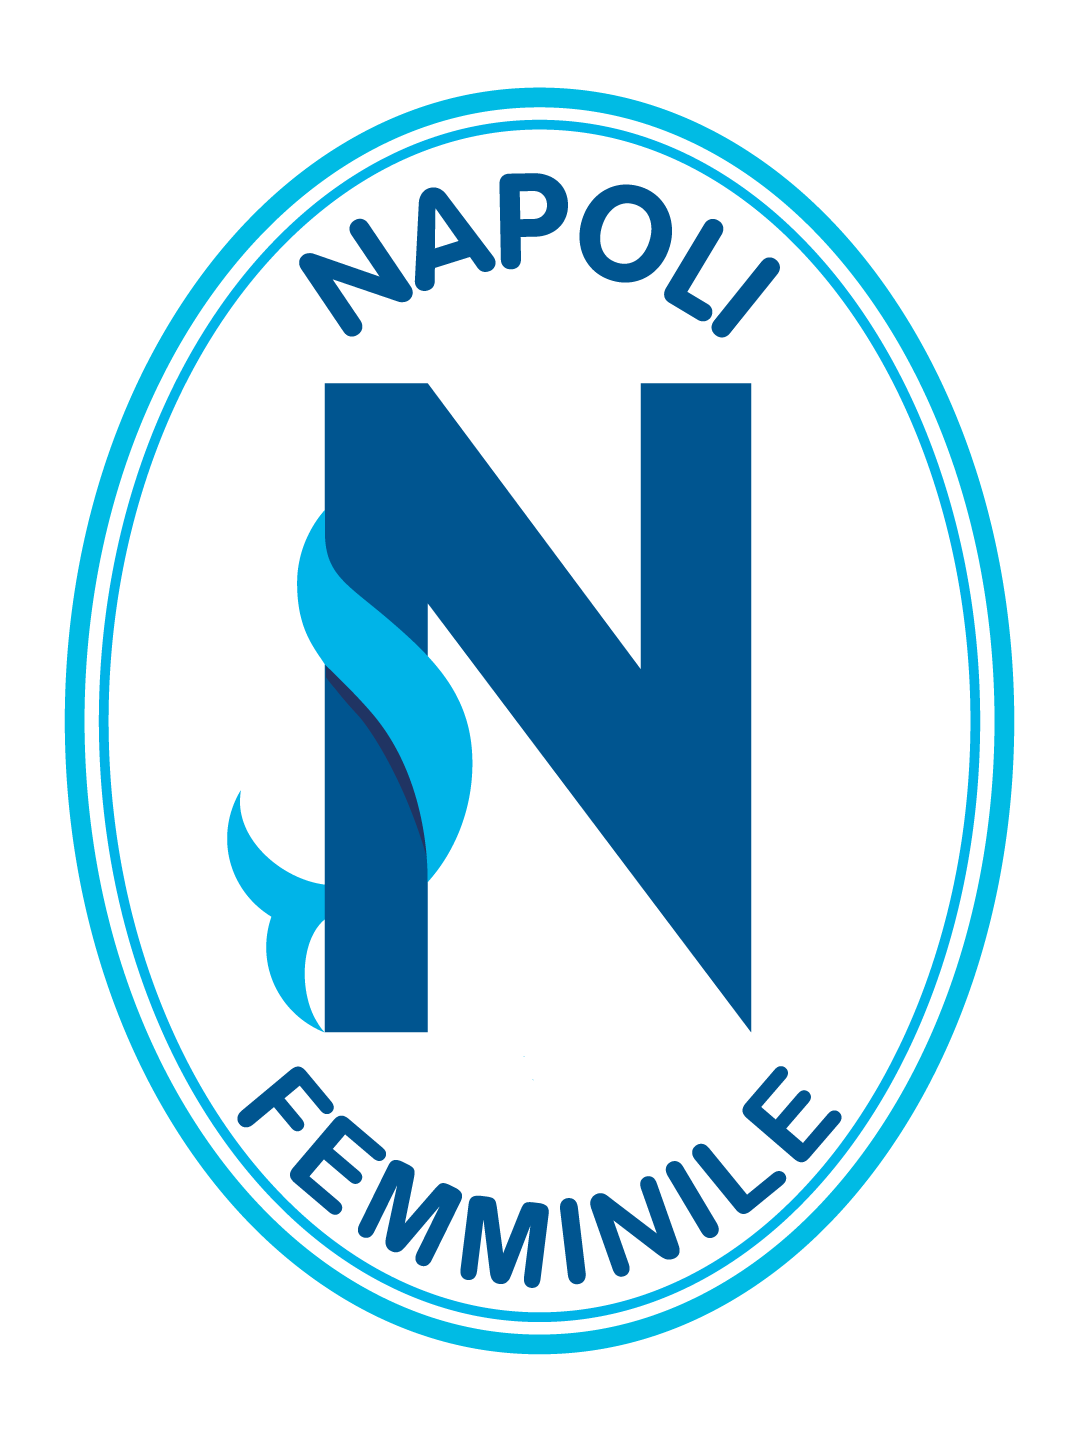 Napoli Femminile SSD